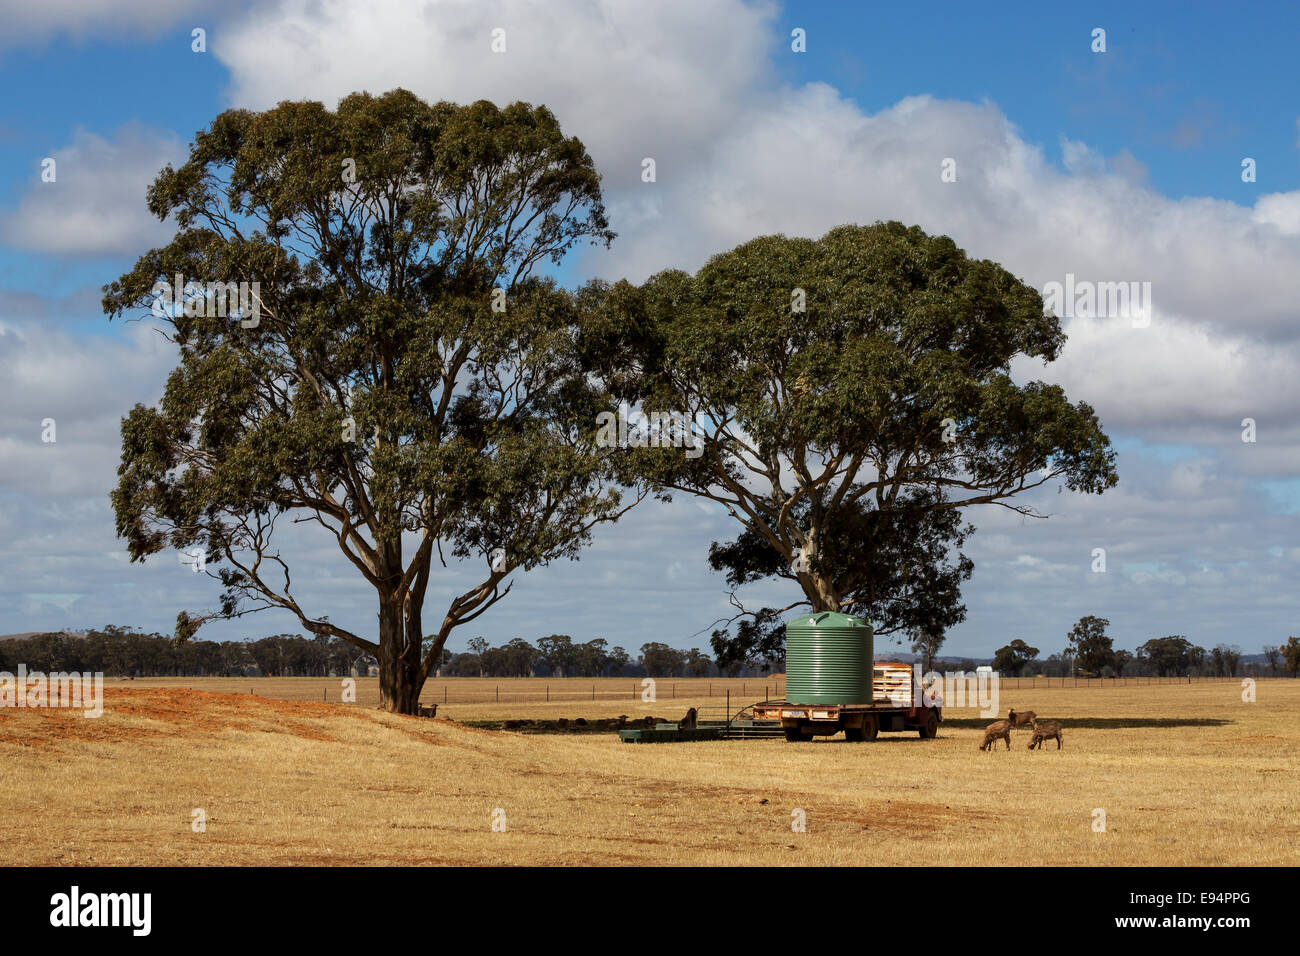 Les moutons près d'un réservoir d'eau reposant sur un vieux camion en pays Victoria en Australie. Banque D'Images